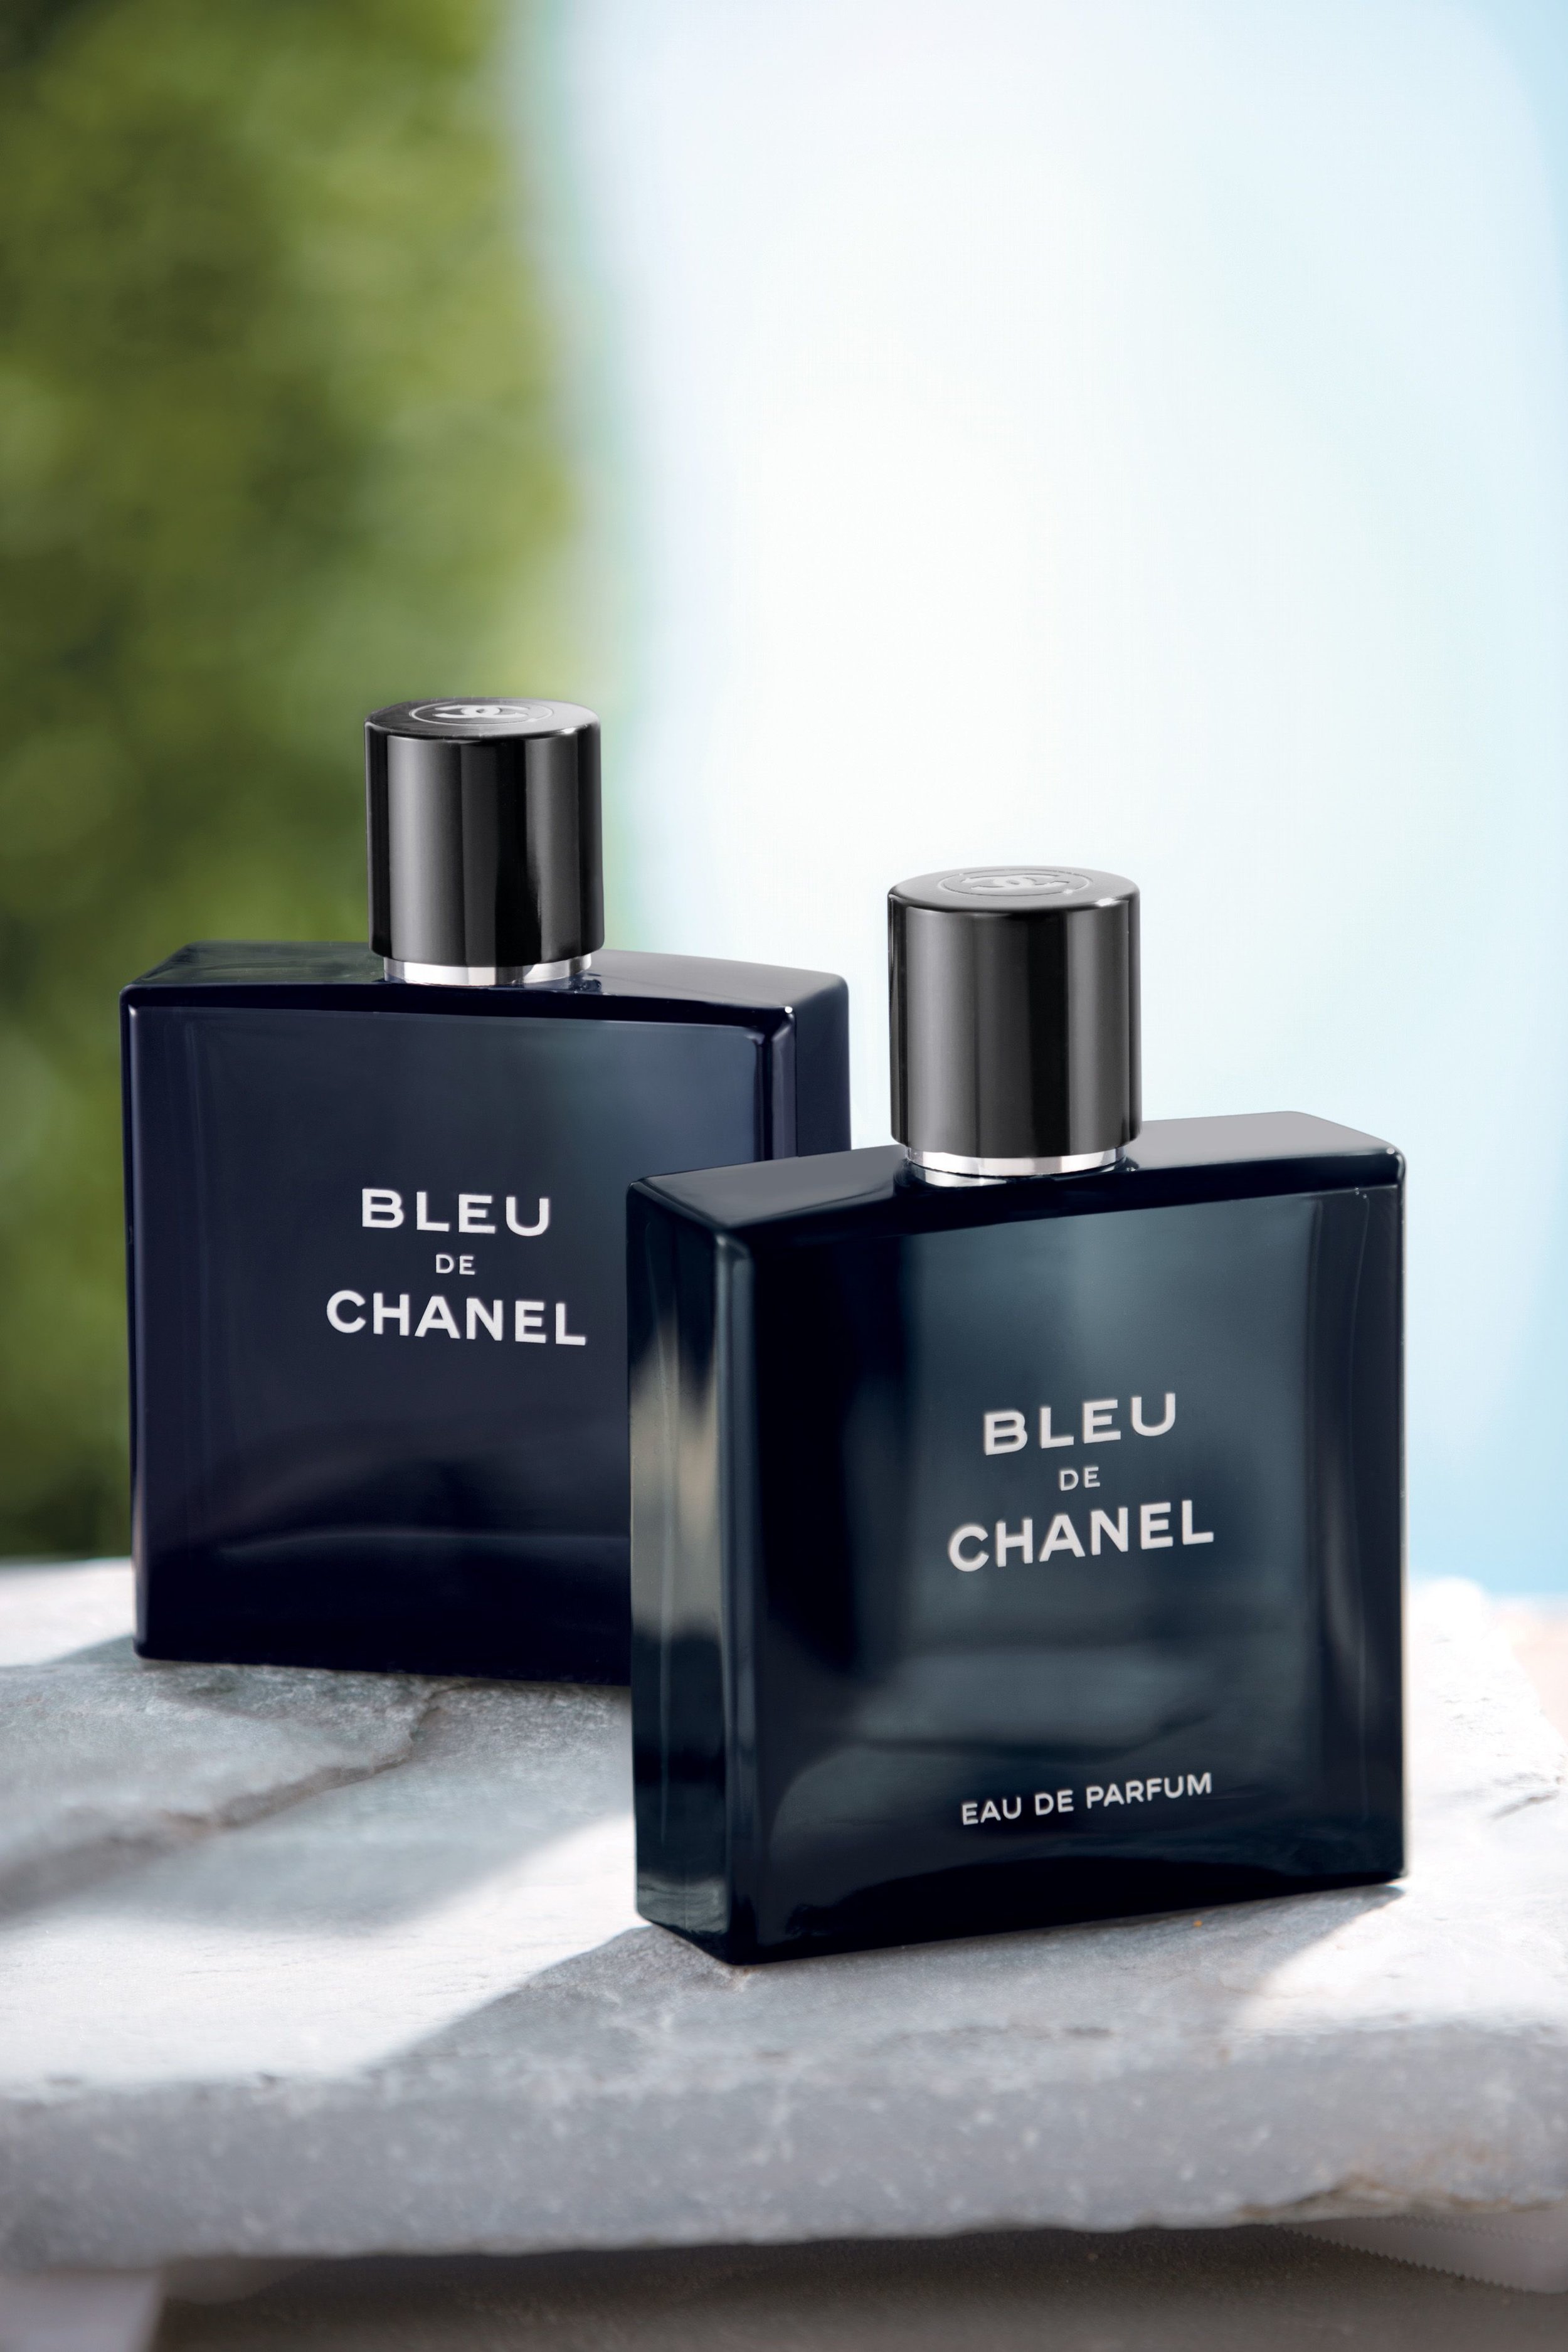 bleu de chanel perfume for men 5.0